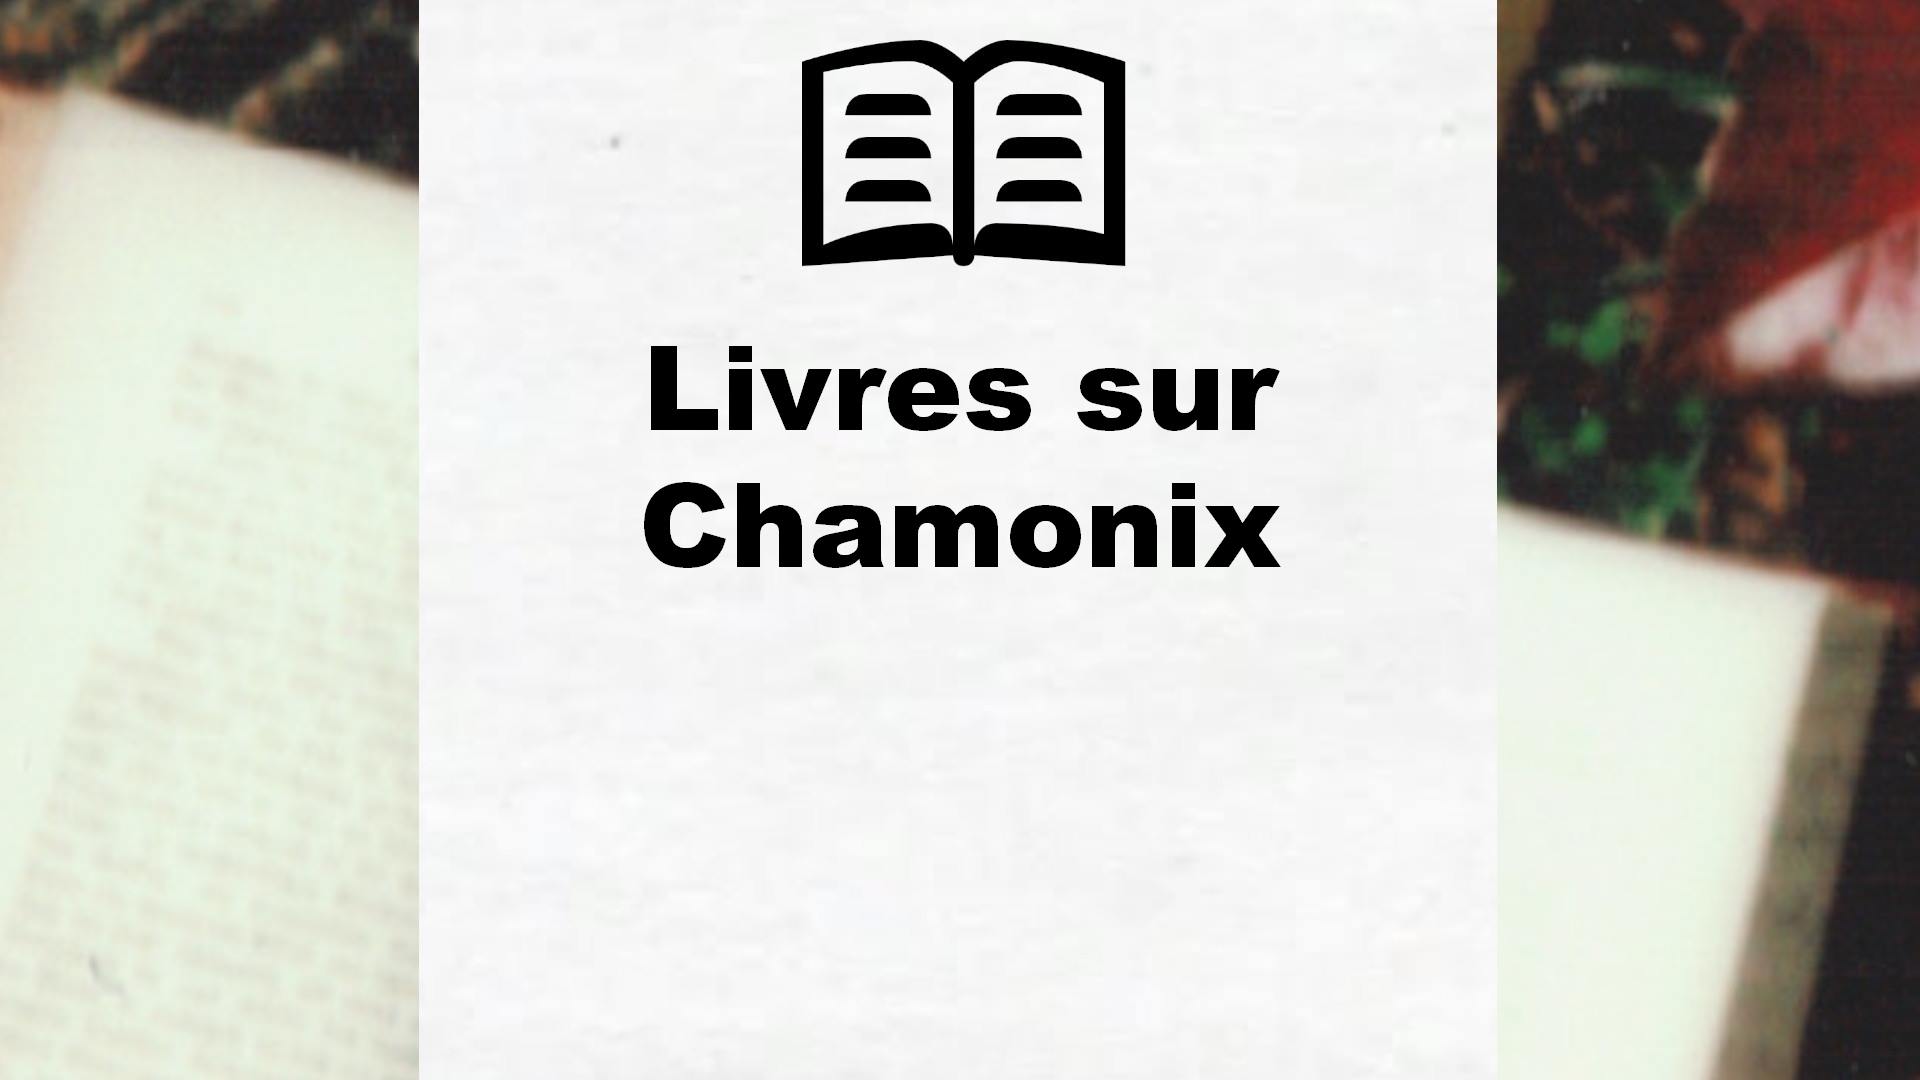 Livres sur Chamonix